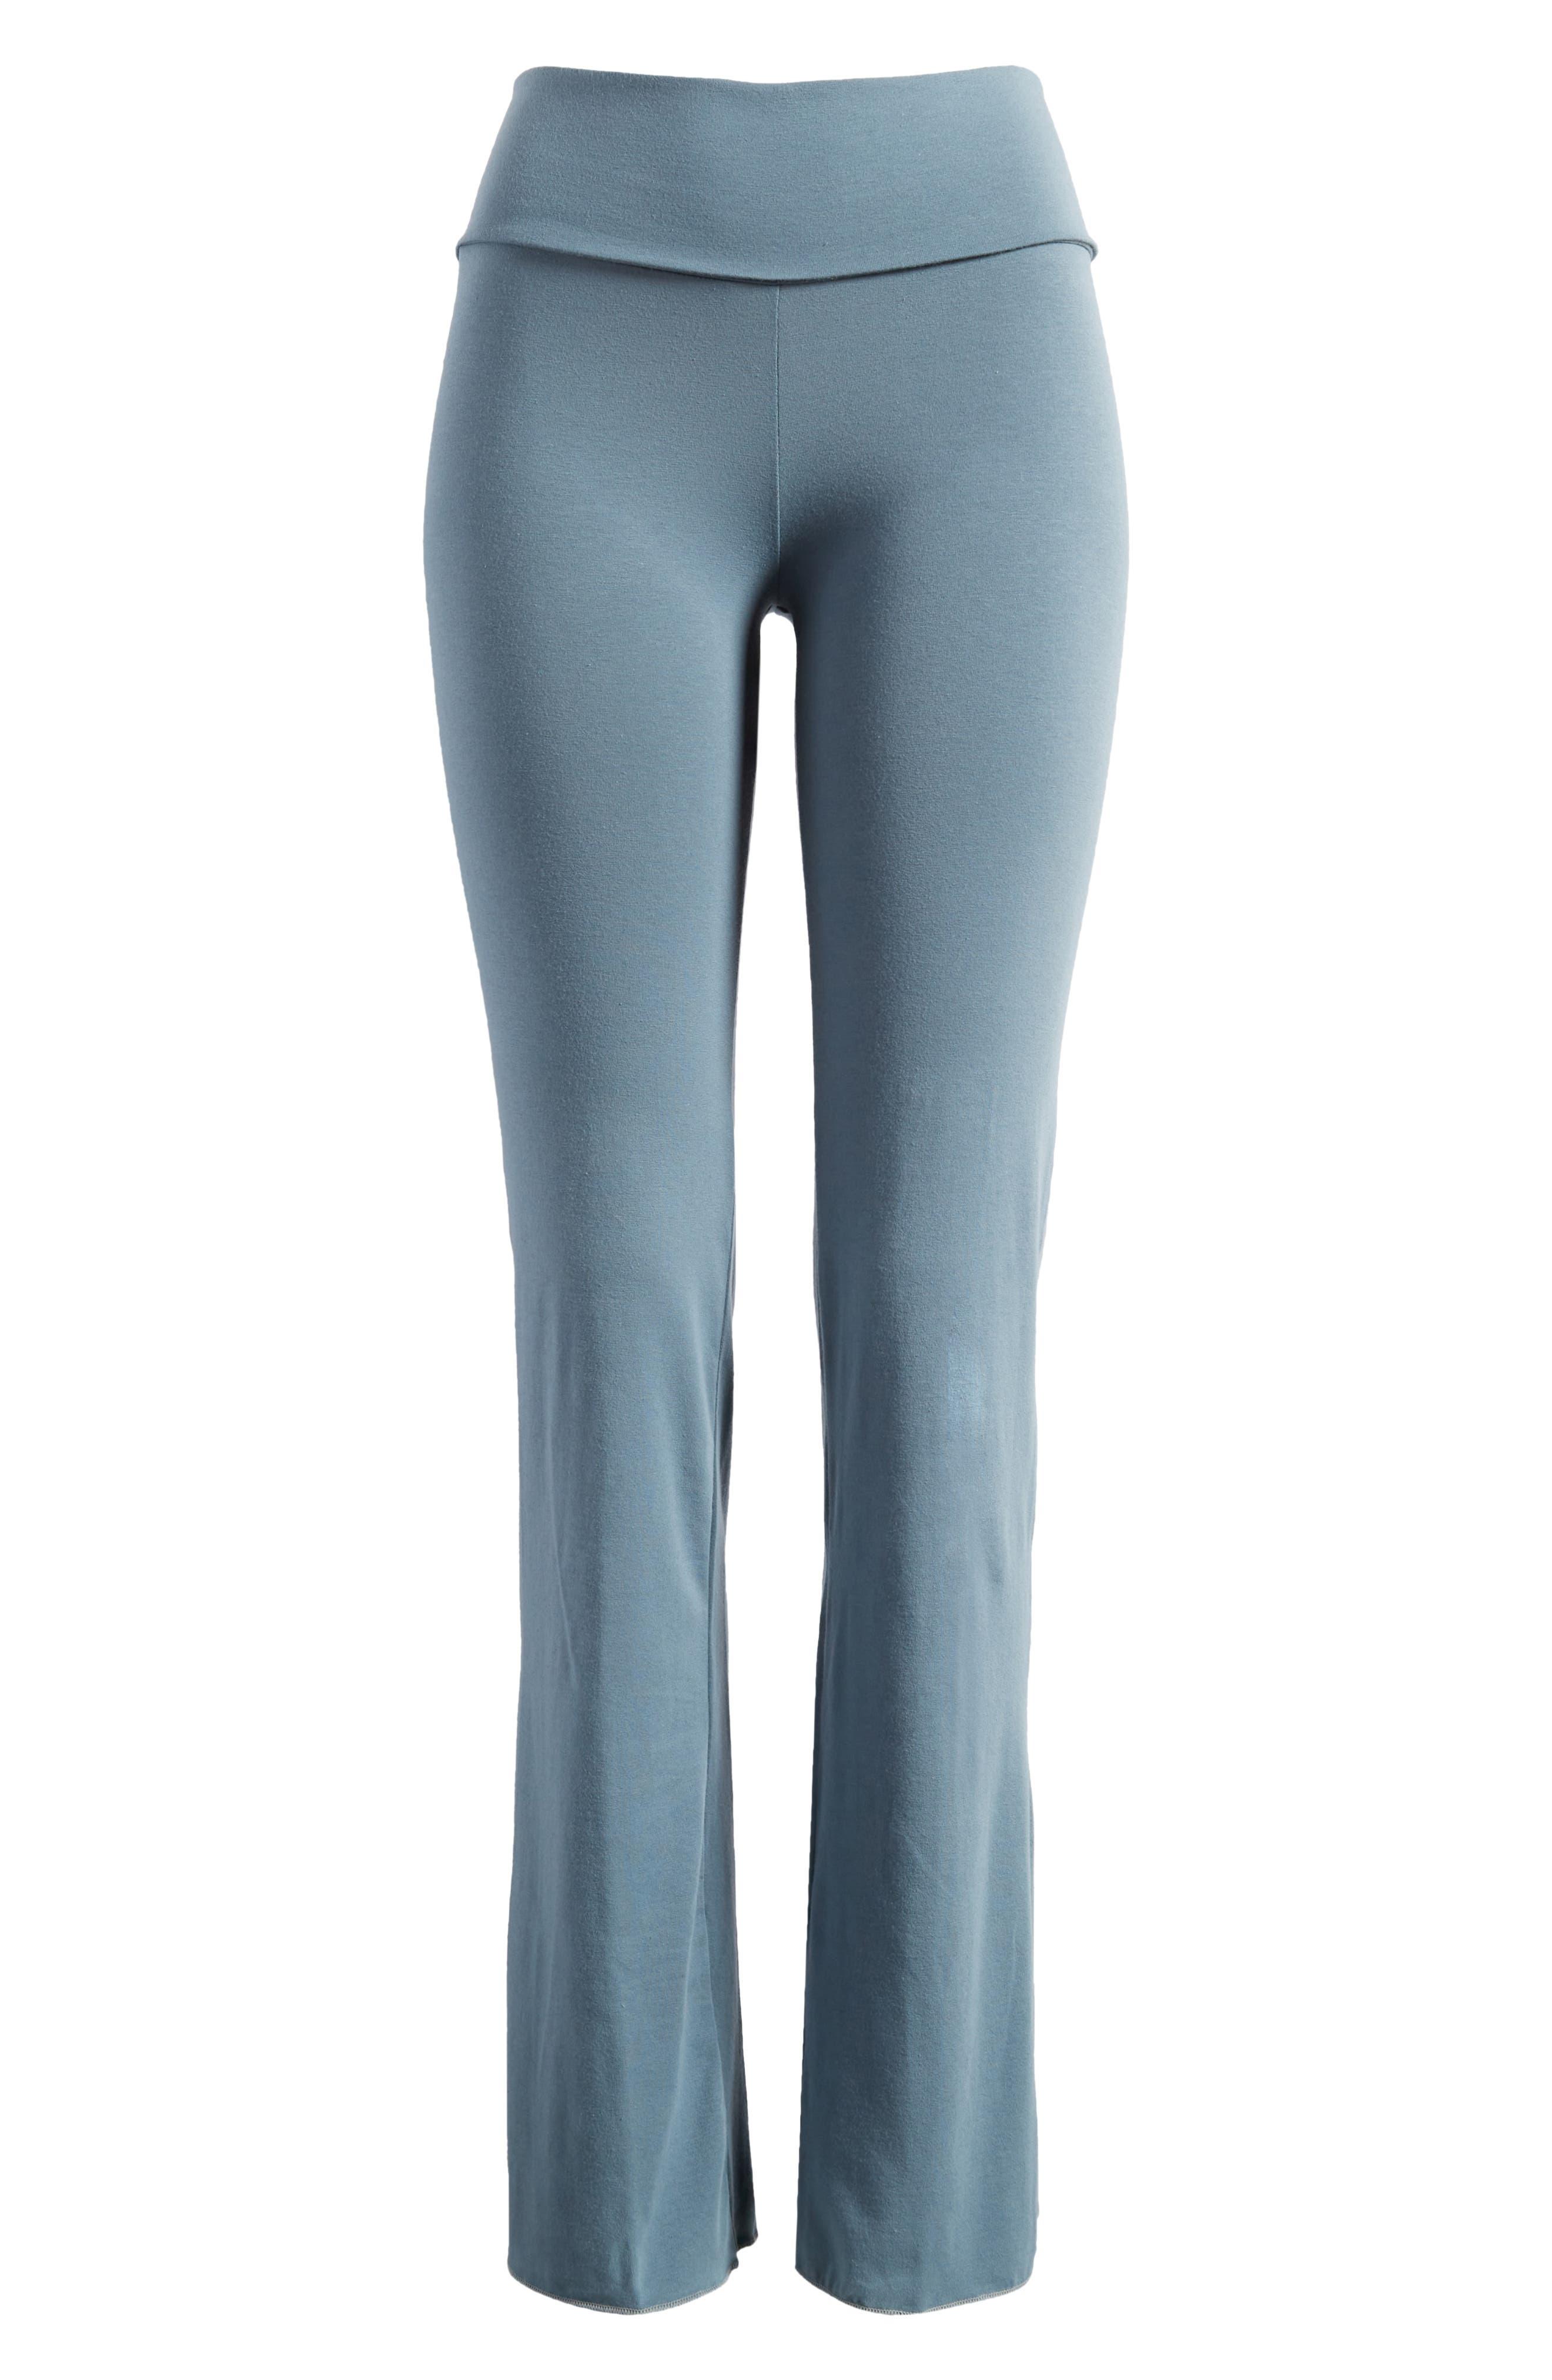 Skims Foldover Pants in Gray